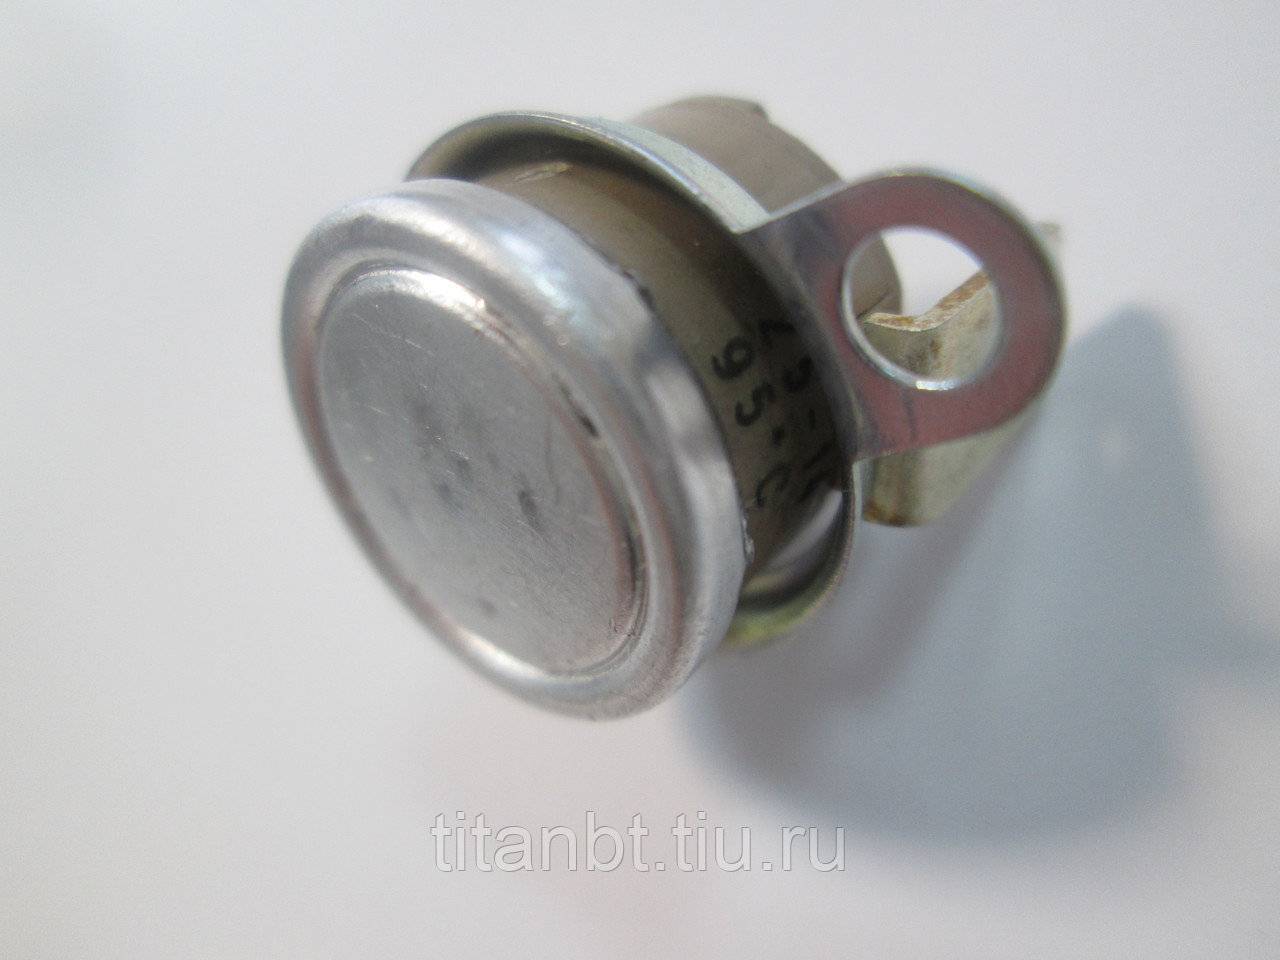 Ремонт терморегулятора аогв-11 ростовское-круглое